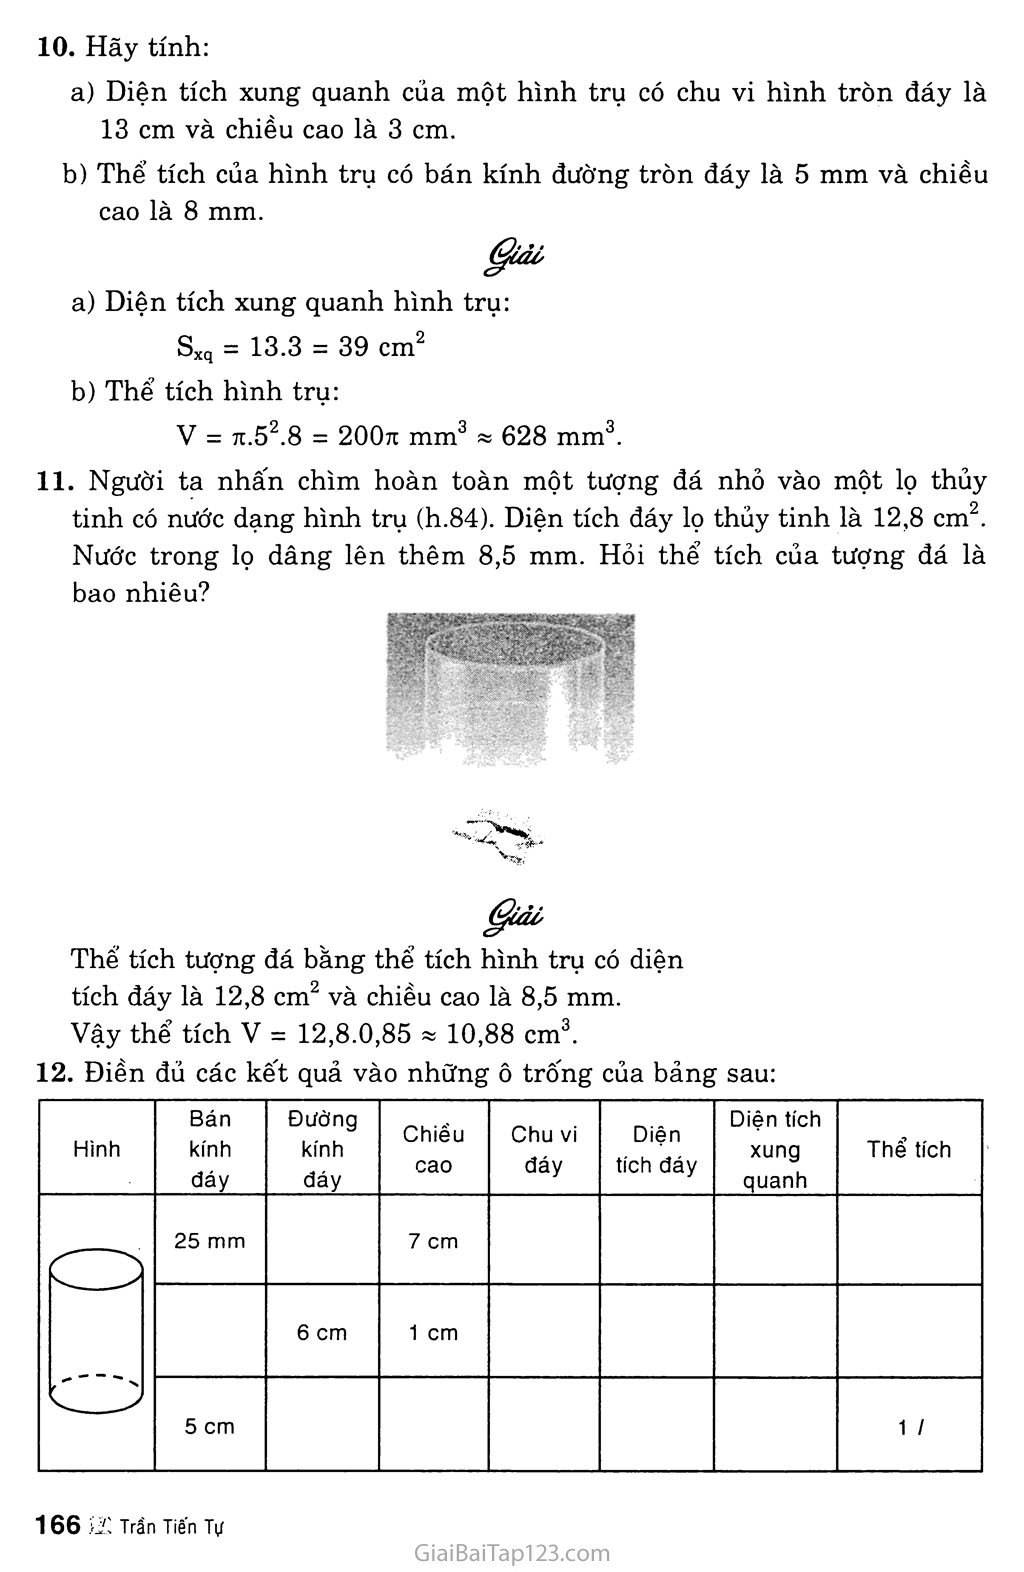 Bài 1. Hình trụ - Diện tích xung quanh và thể tích của hình trụ trang 6